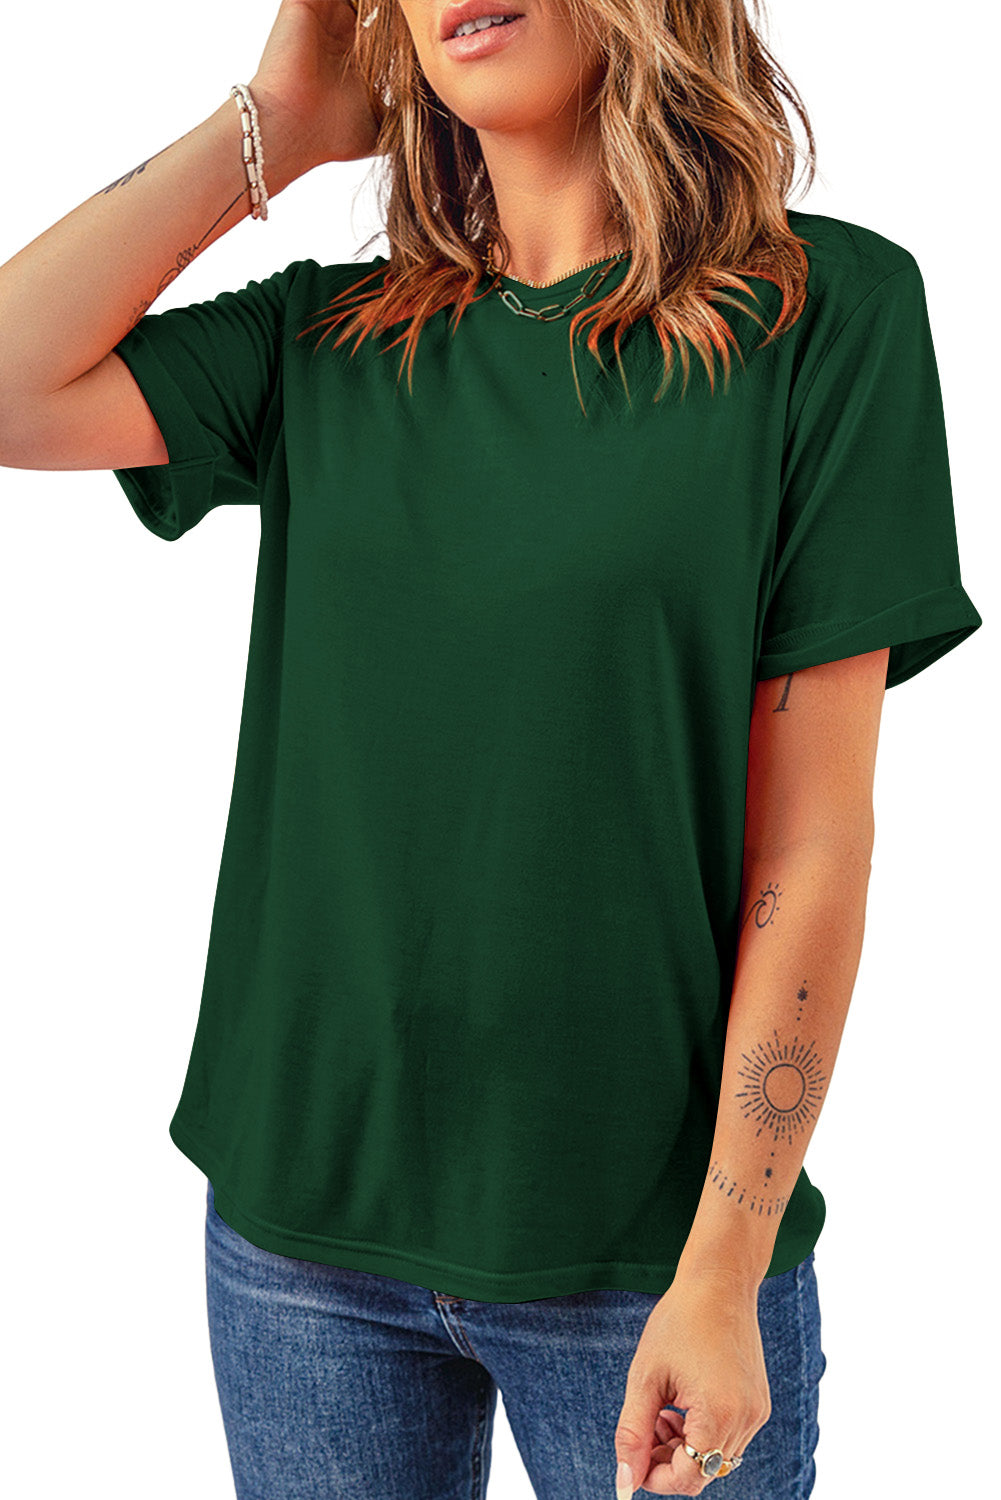 Rosarotes, lässiges, schlichtes T-Shirt mit Rundhalsausschnitt